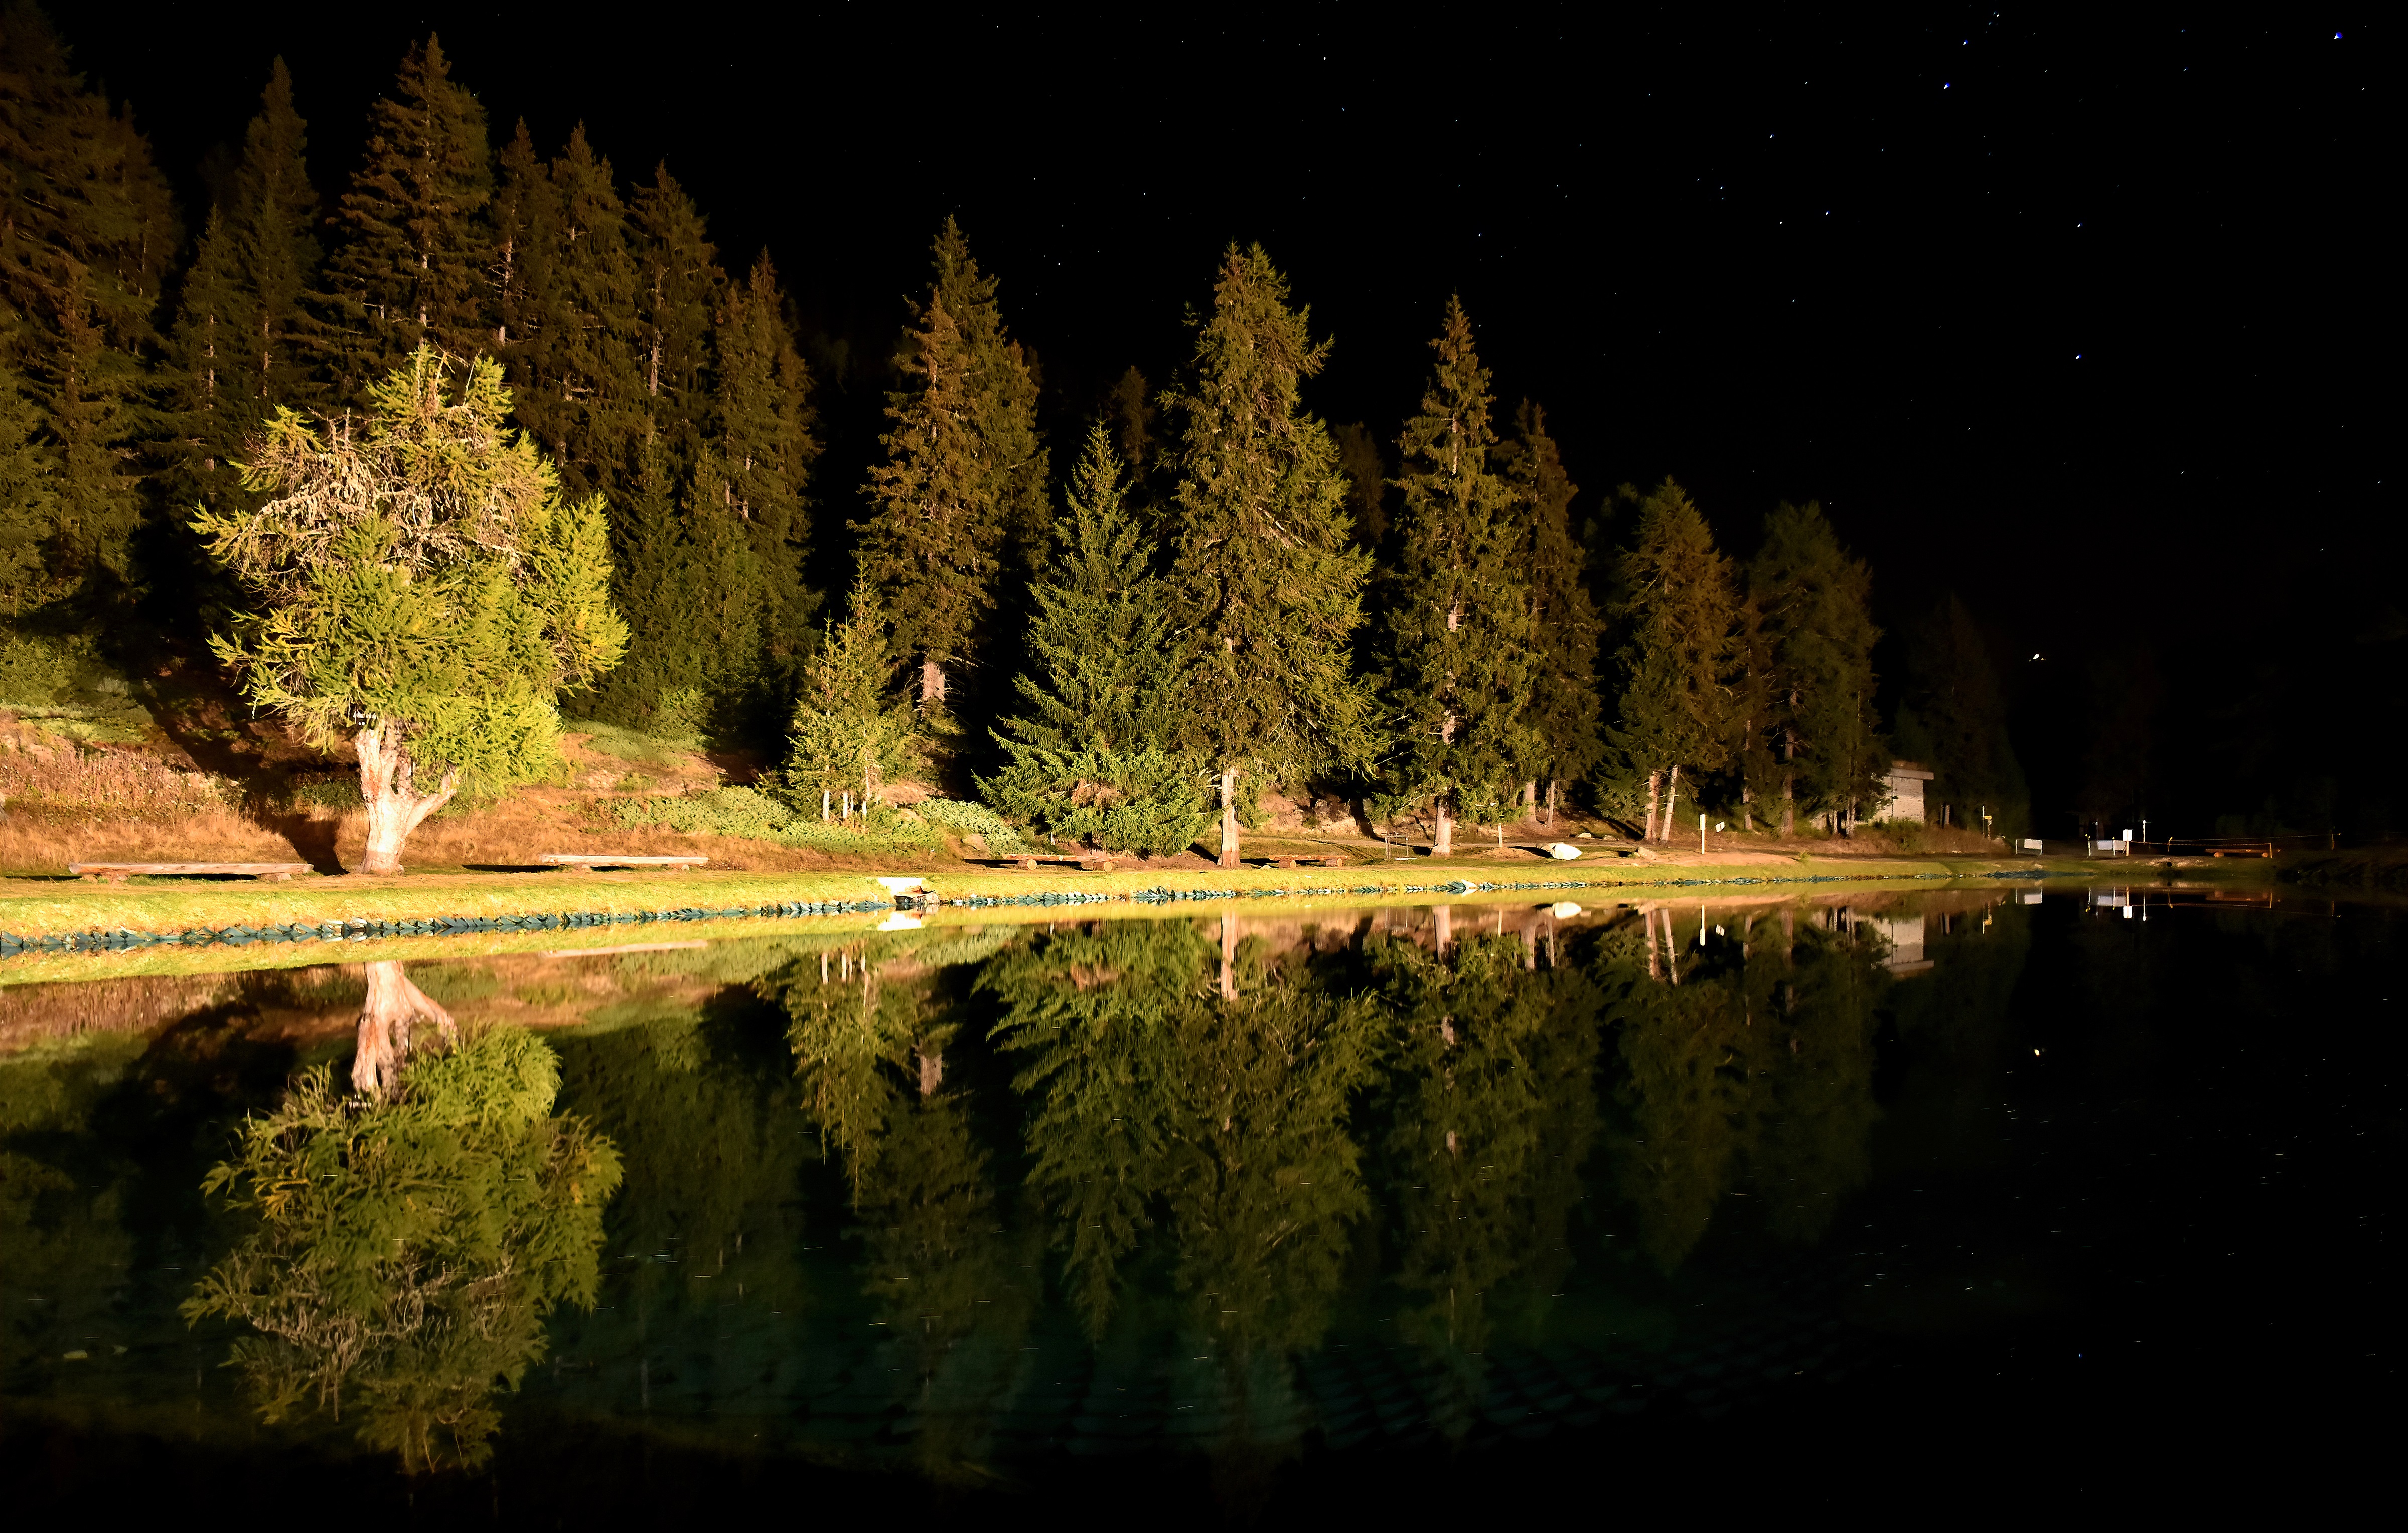 La notte si specchia nel lago